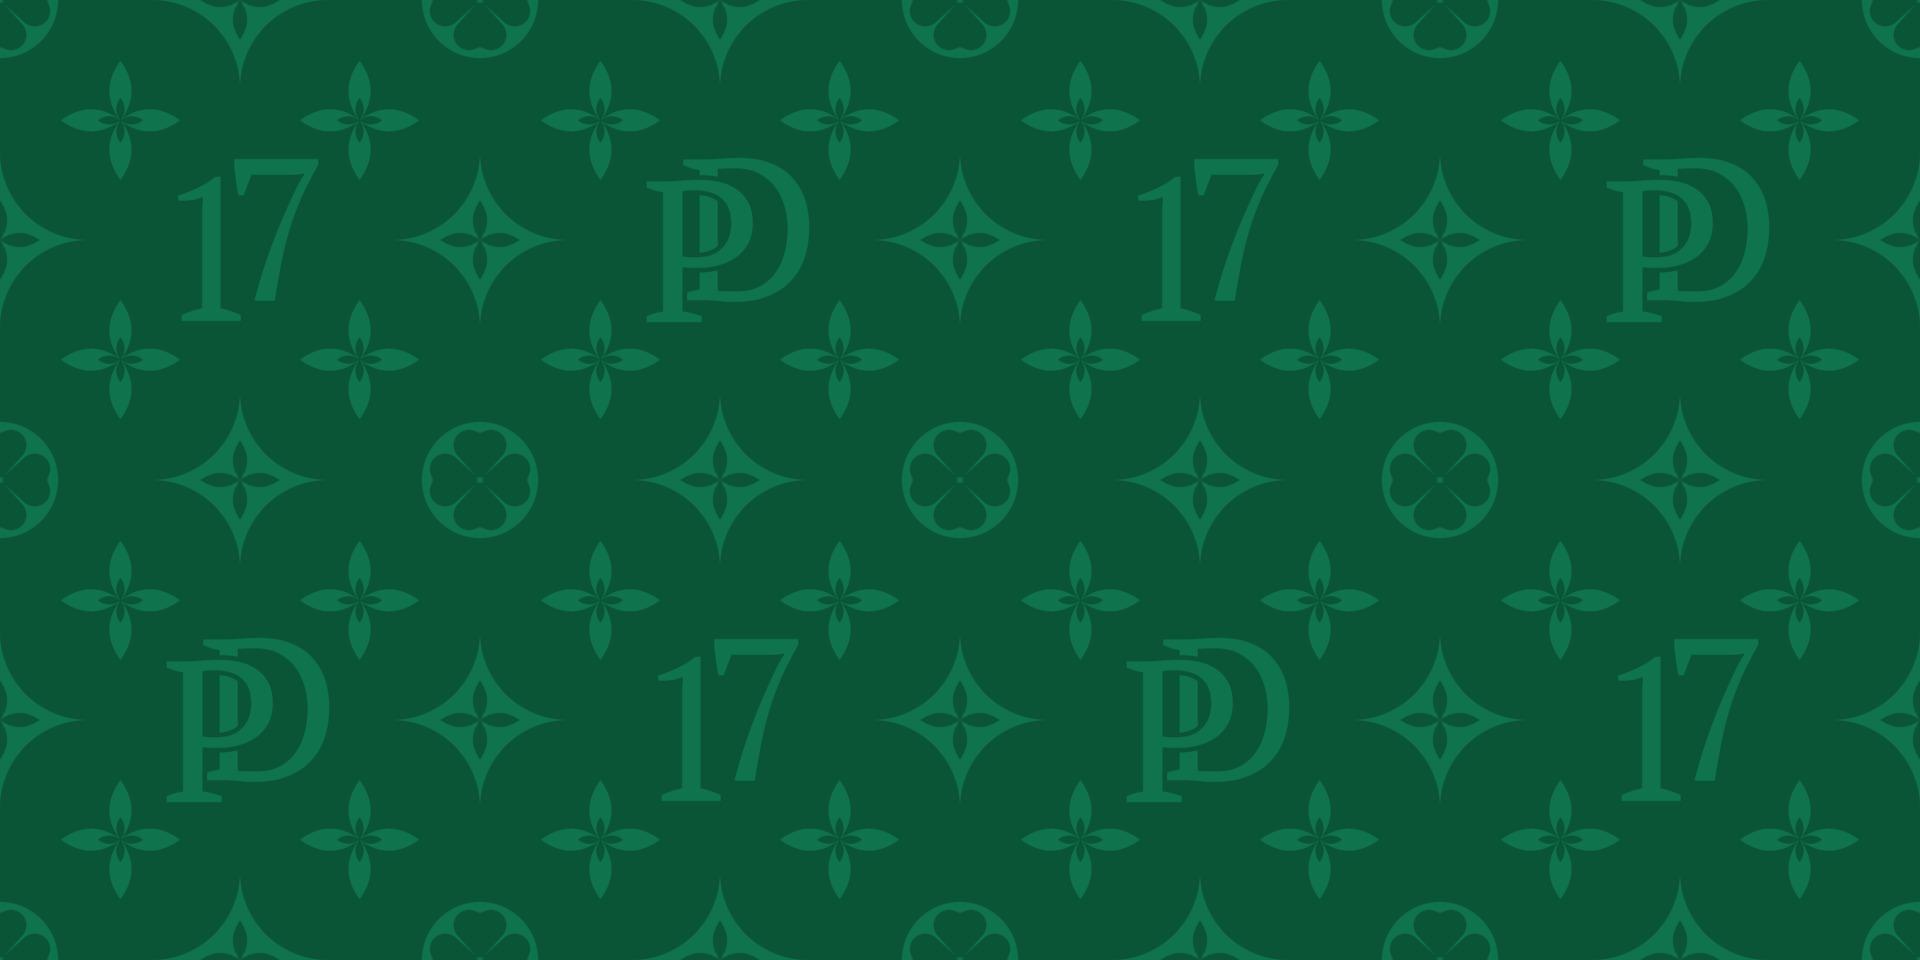 st. padrão sem emenda do vetor do dia de patrick s, plano de fundo dos números verdes de quatro folhas 17, abreviatura pd. ilustração vetorial